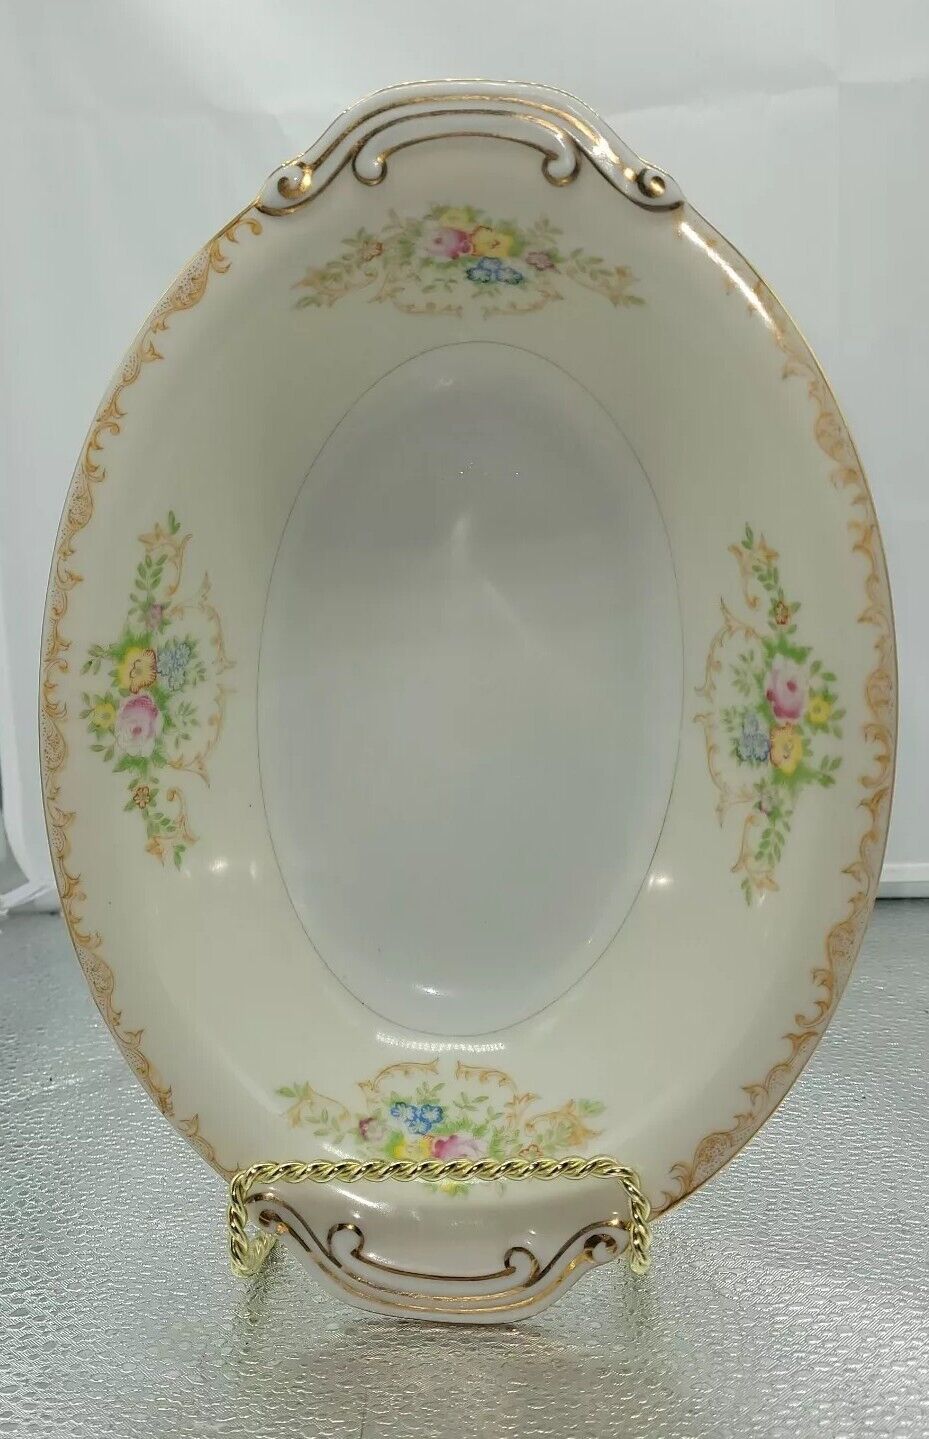 VTG Oval Floral Porcelain China Serving Bowl Scroll Detail Edges Gold Tone Edges